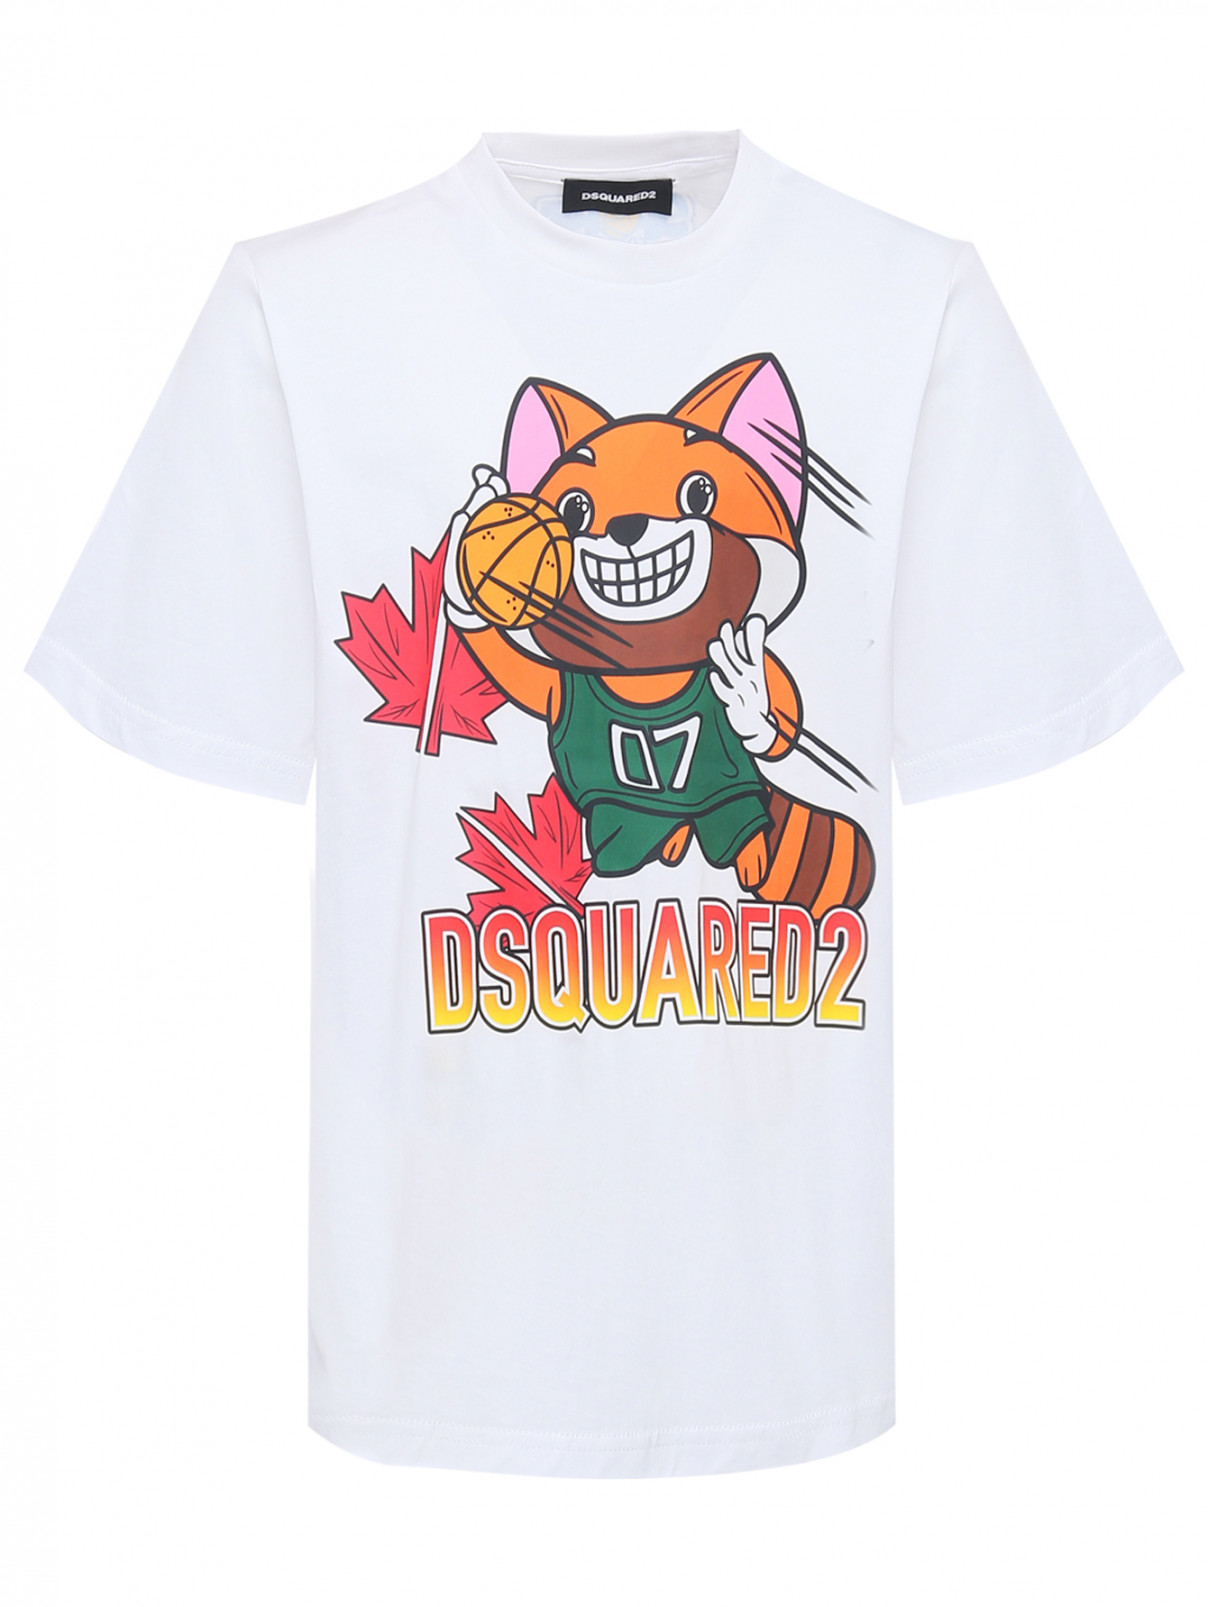 Трикотажная футболка с принтом Dsquared2  –  Общий вид  – Цвет:  Белый